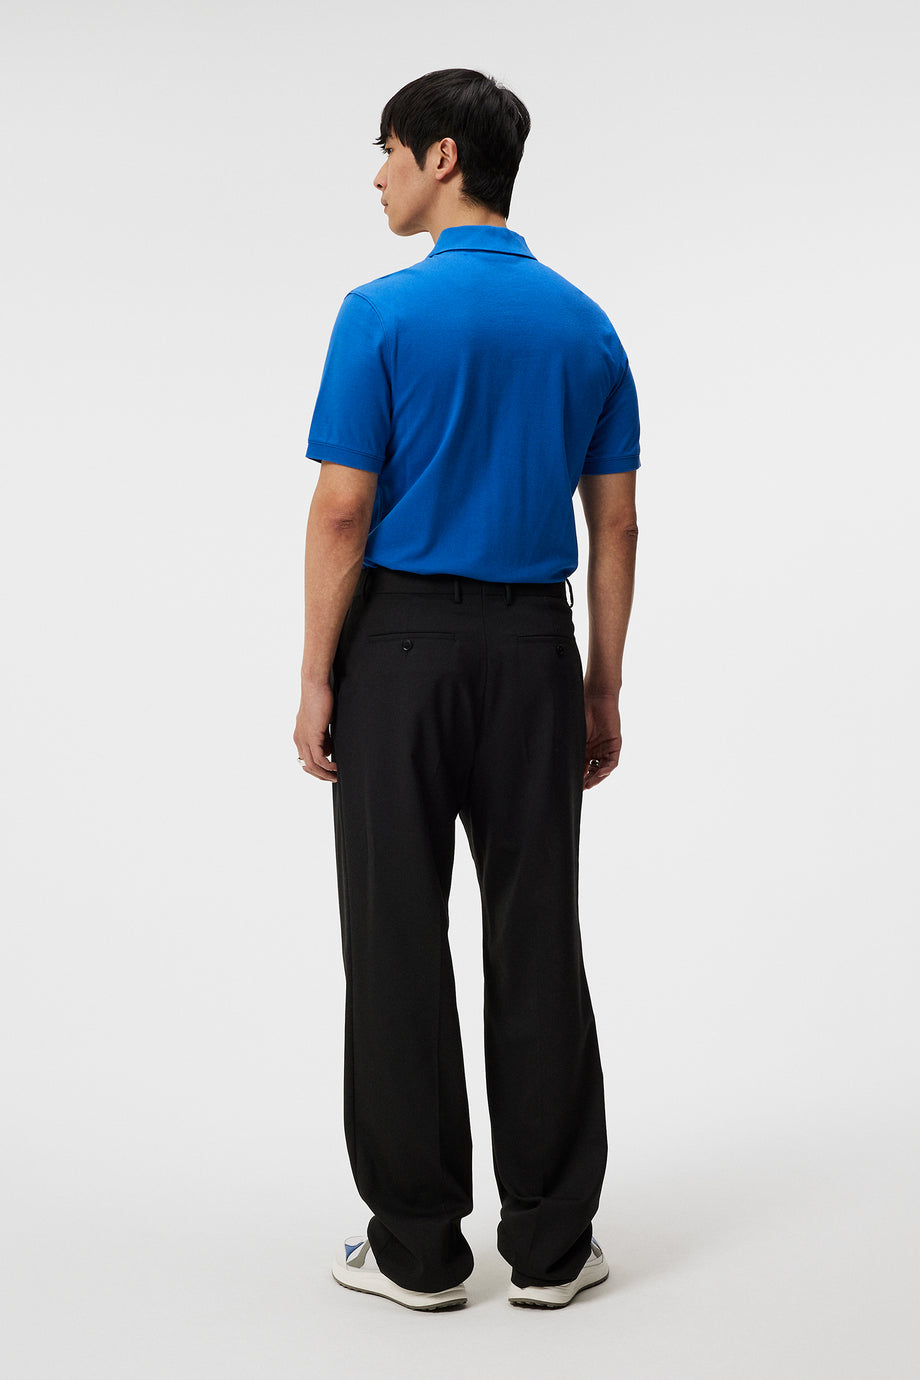 Rubi Slim Polo Shirt / Nautical Blue